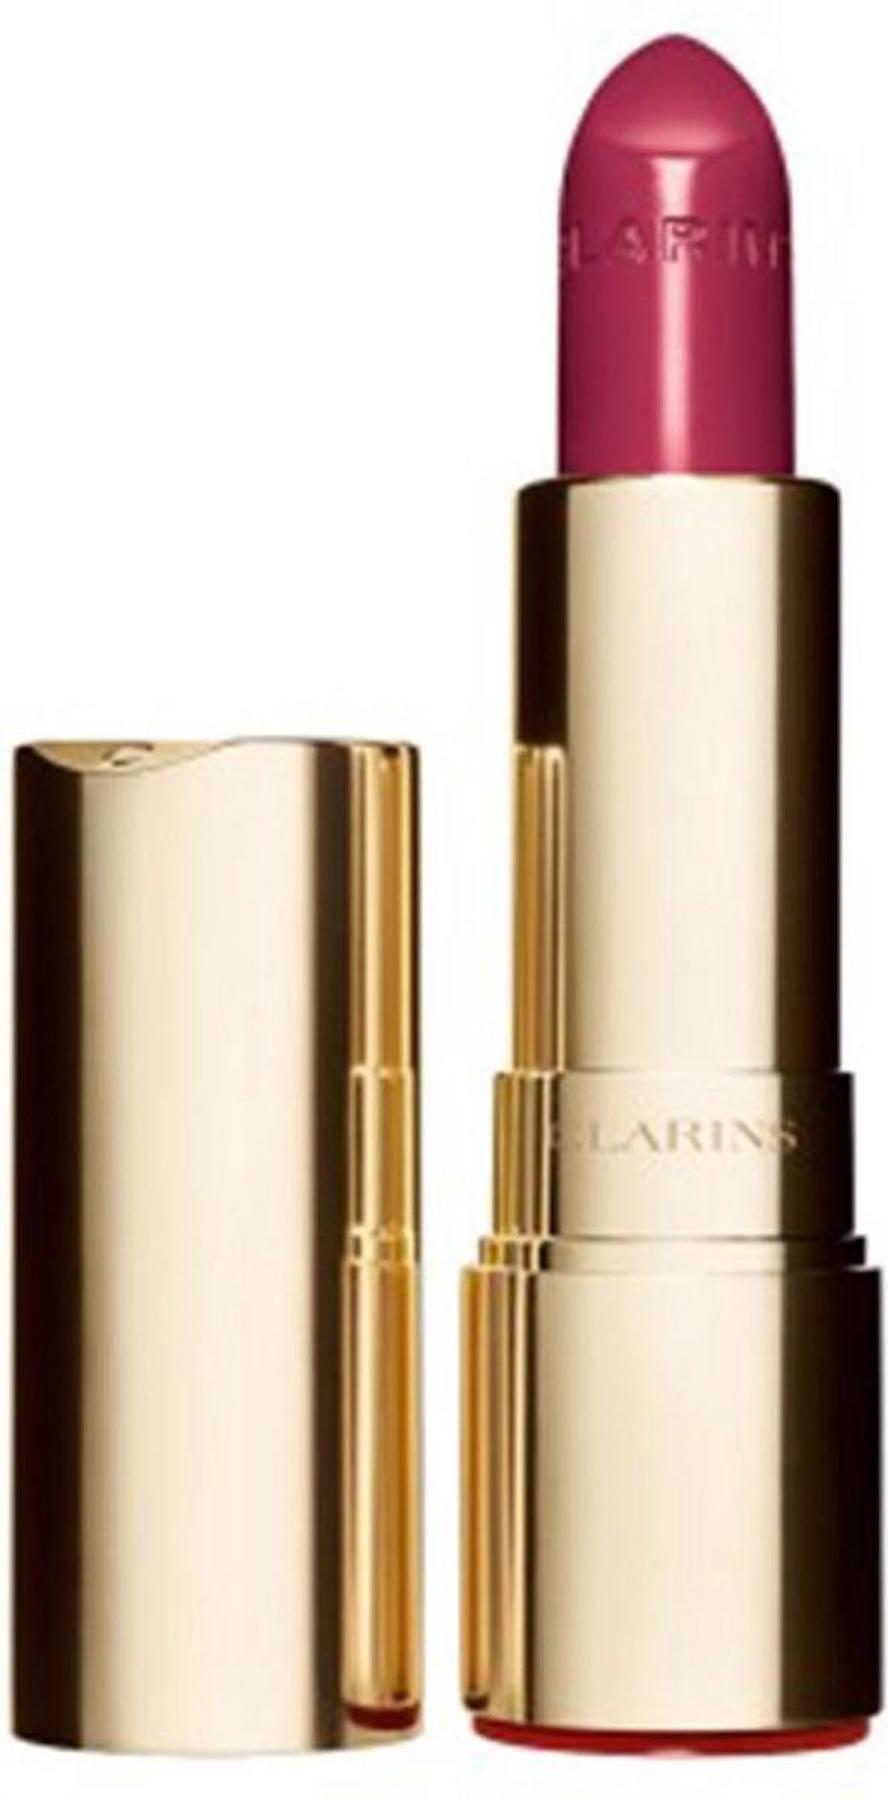 Clarins 758L Sandy Pink Kalıcı Dudak Dolgunlaştırıcı Parlak Krem Lipstick Ruj